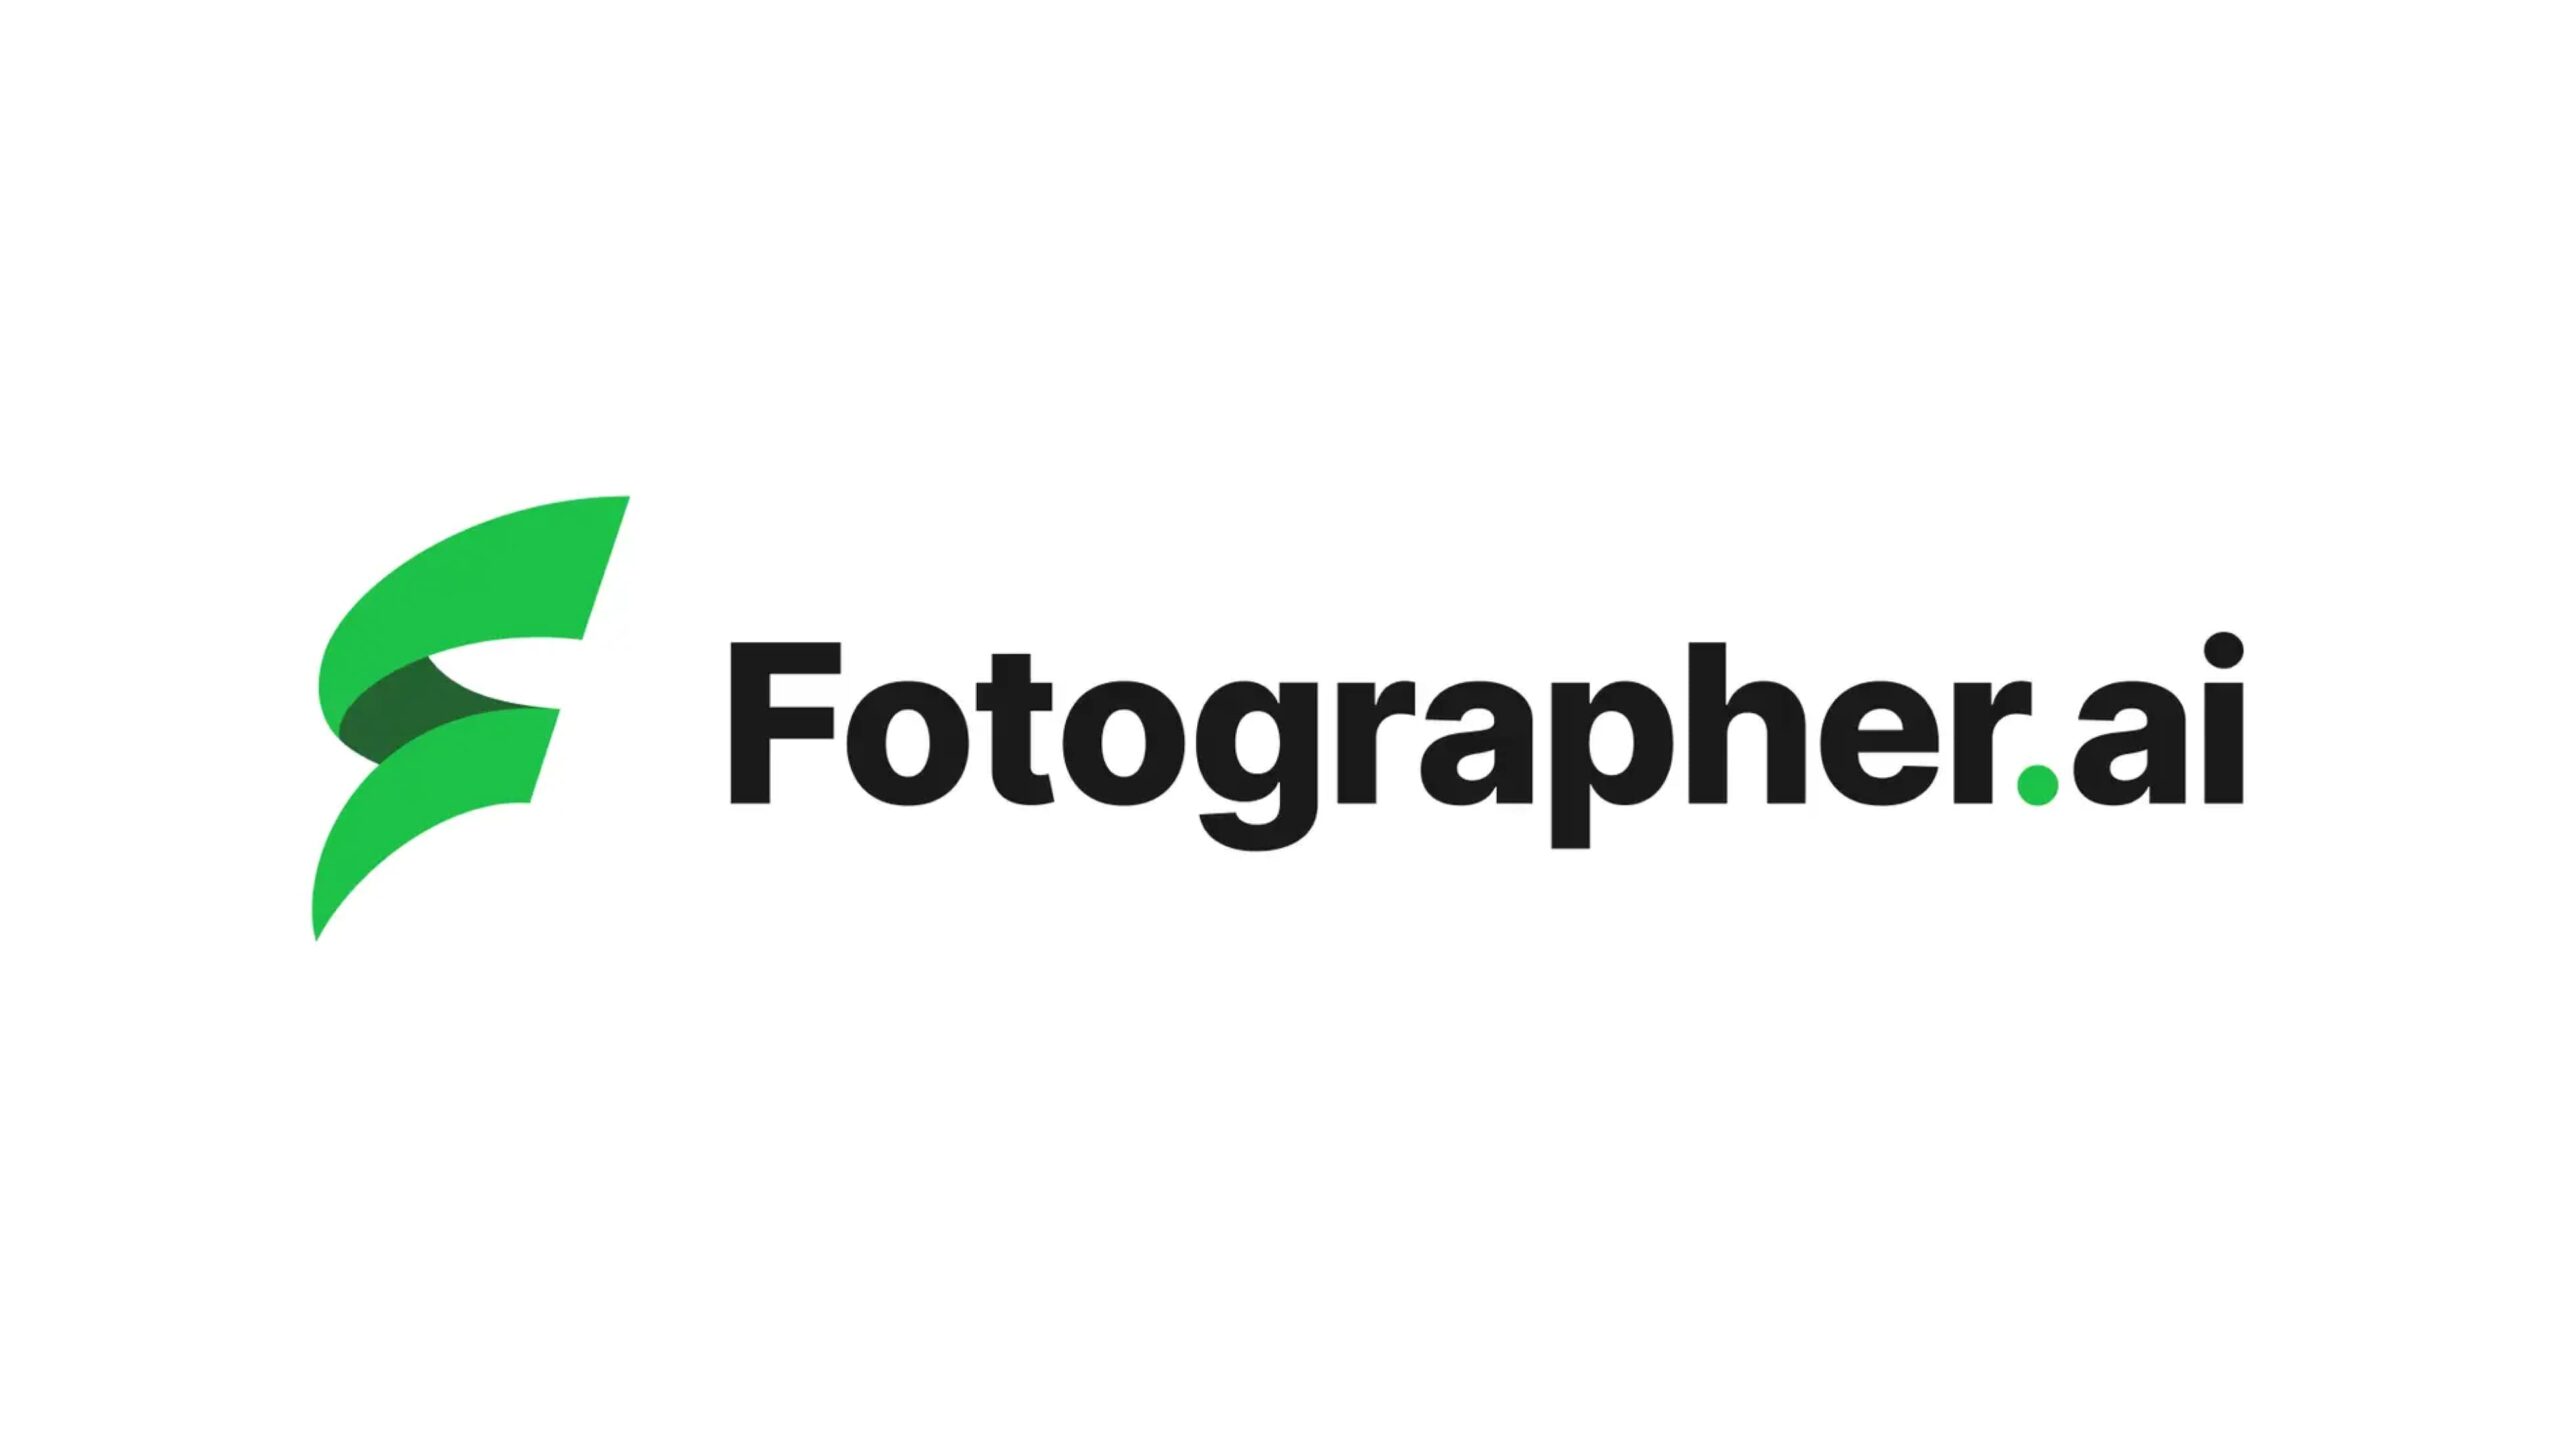 Fotographer AI株式会社がシードラウンドにて1.1億円の資金調達